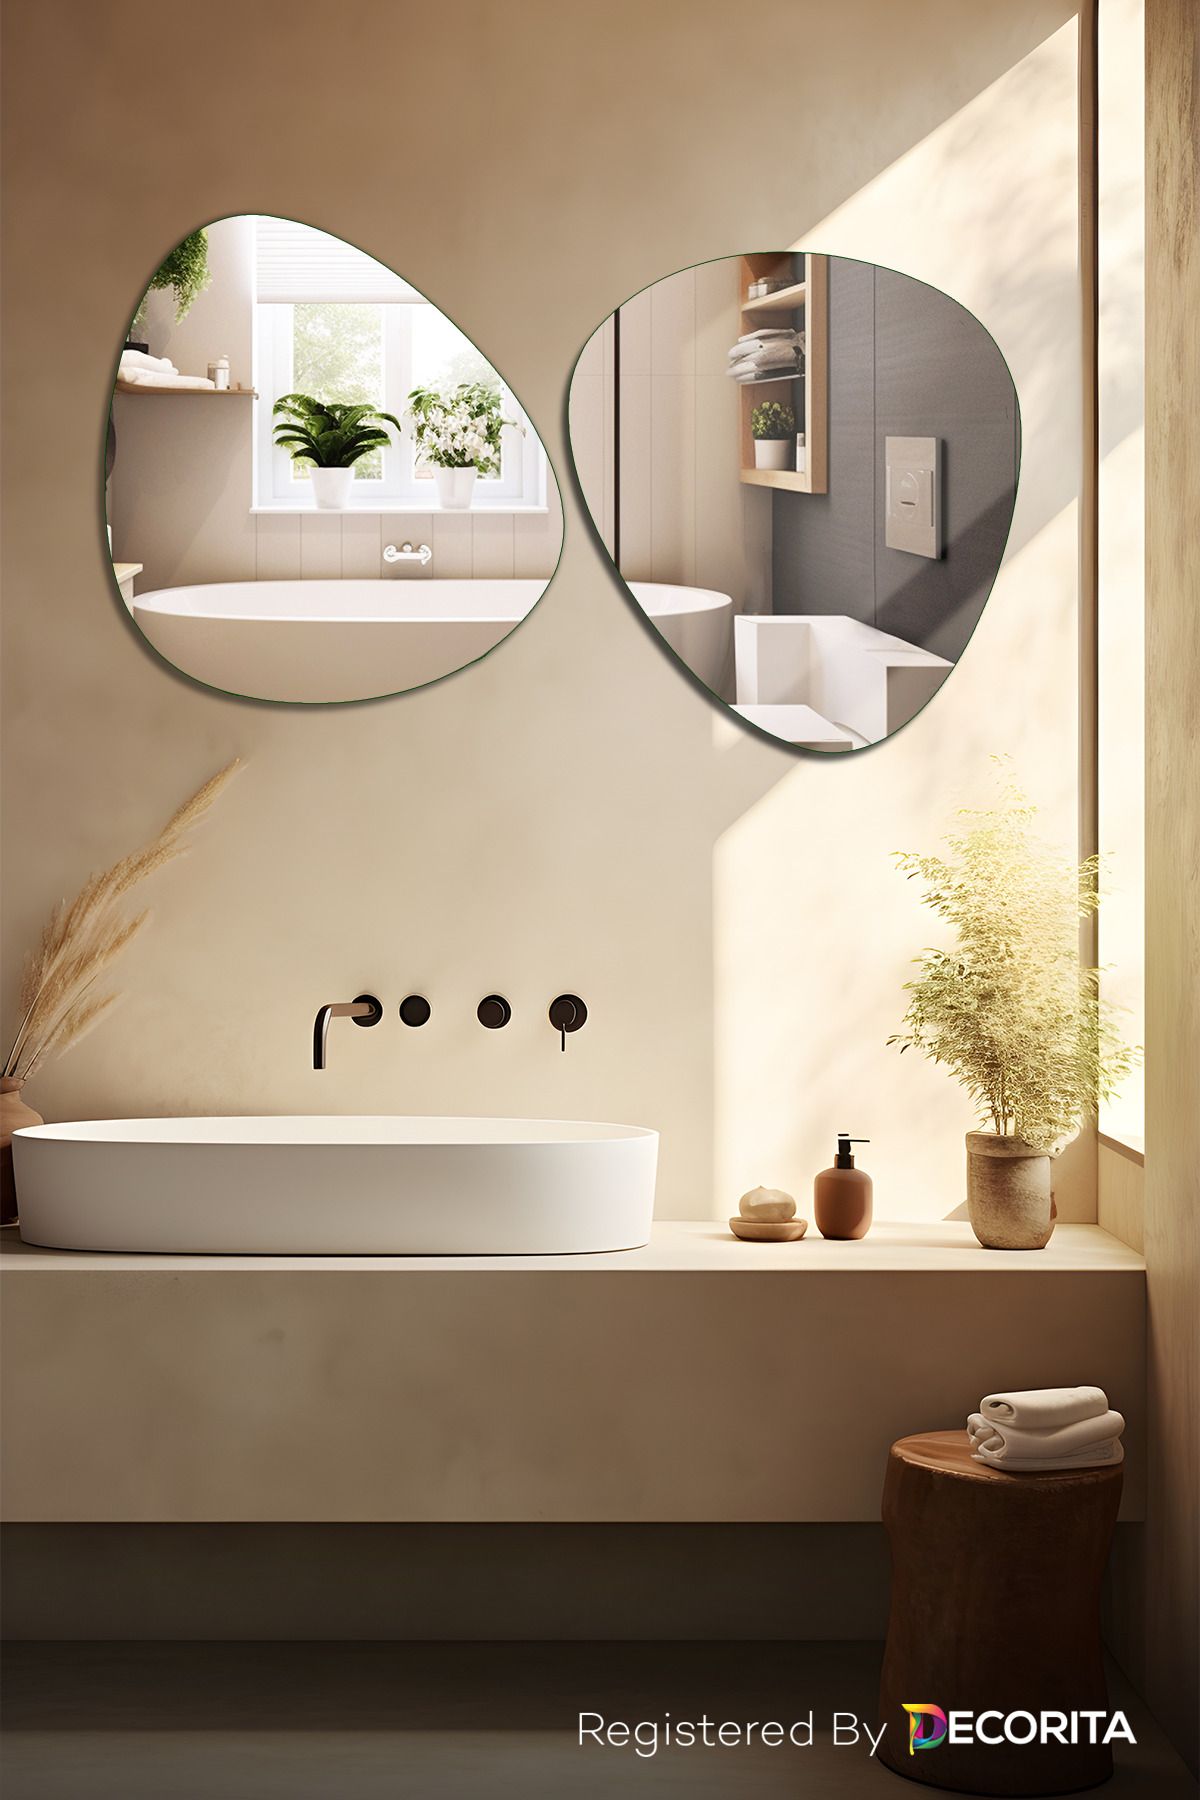 Decorita Banyo Aynası | Düz Ayna | 2'li Takım Zen Ayna | 50cm X 50cm